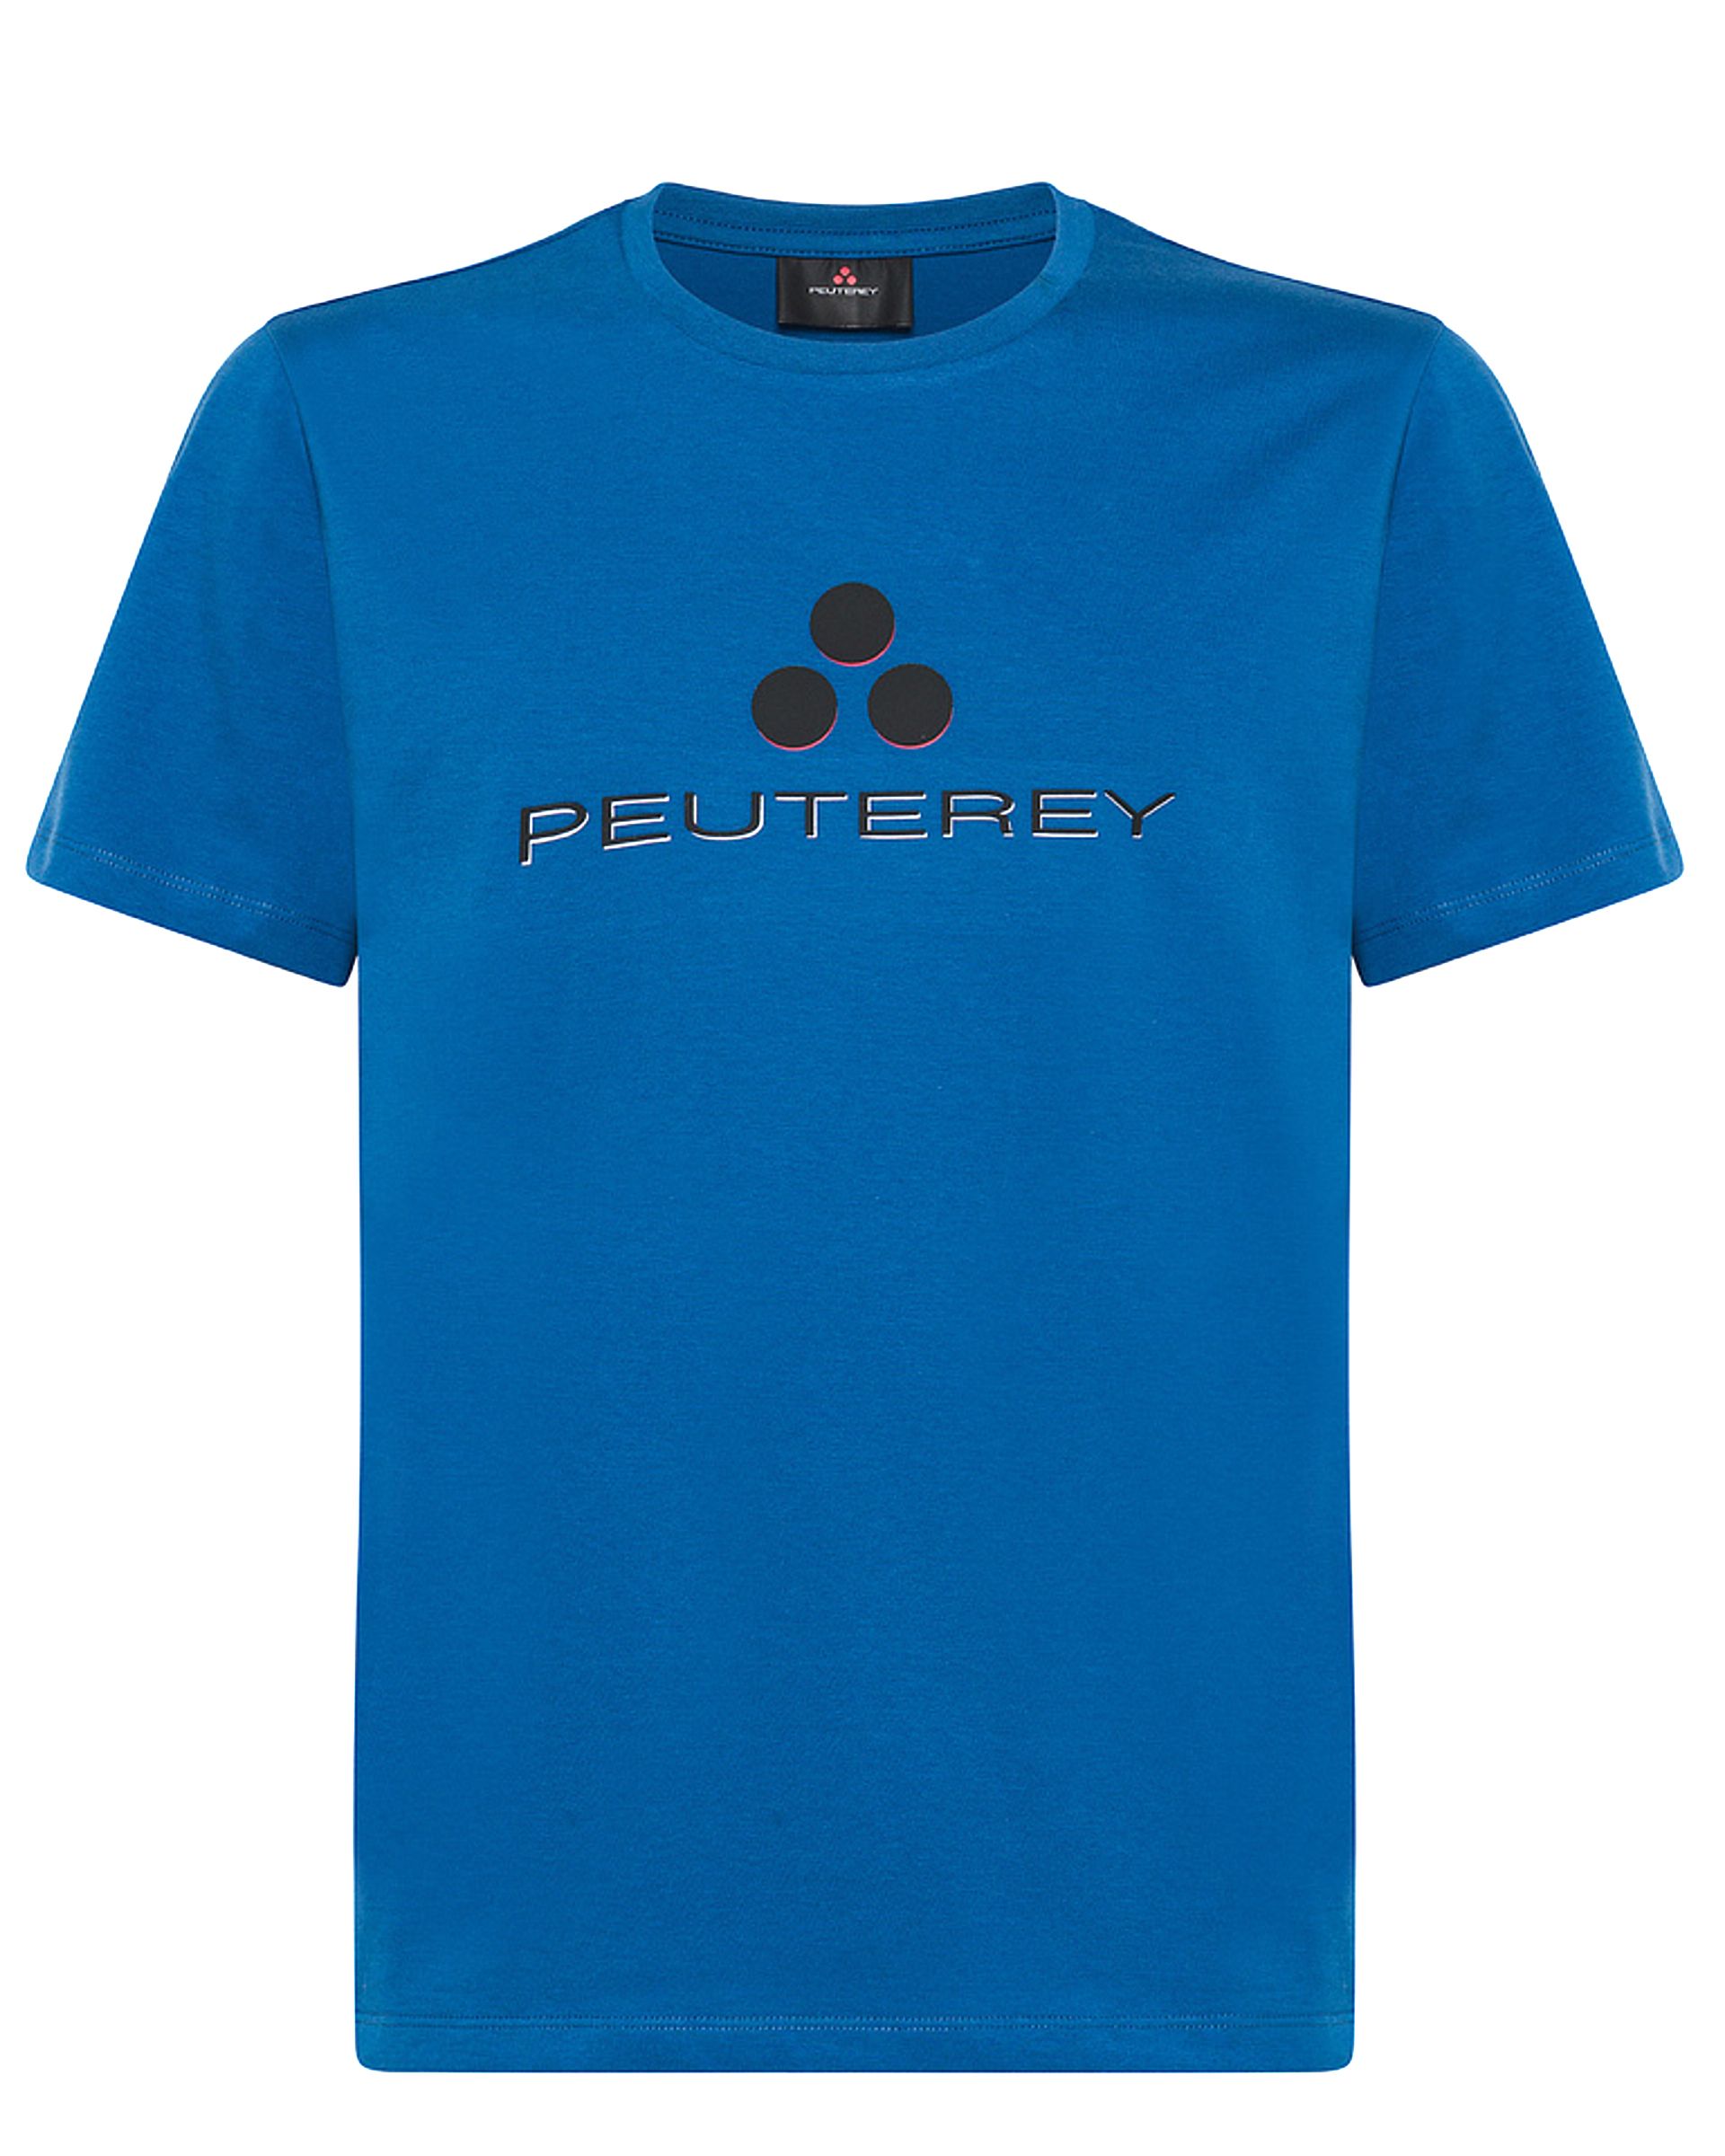 Peuterey T-shirt KM Blauw 083992-001-L